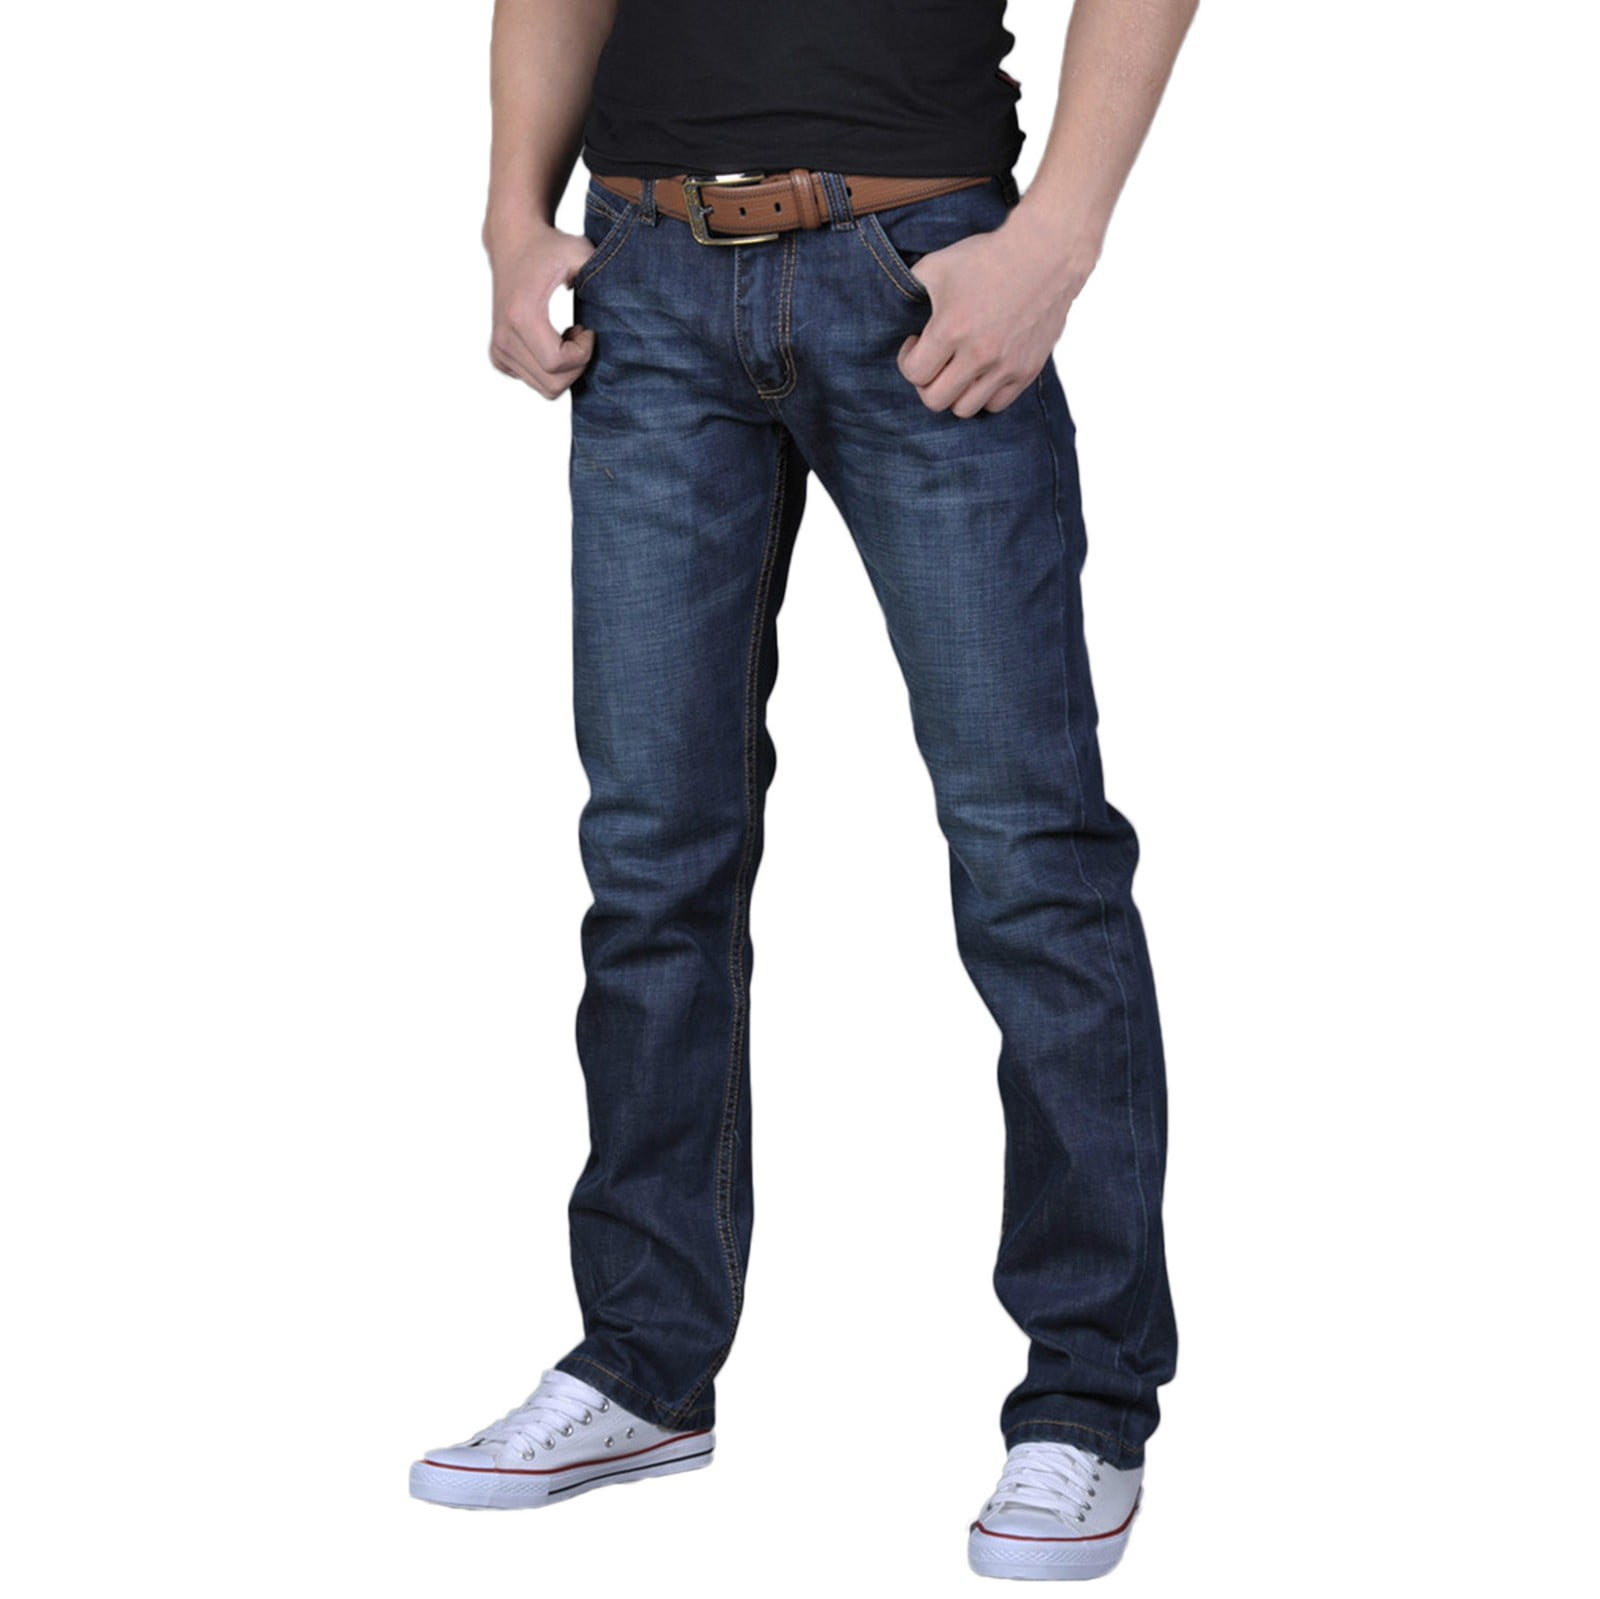 Pimfylm Skinny Jeans Men Bell Bottom Jeans For Men Blue 33 - Walmart.com